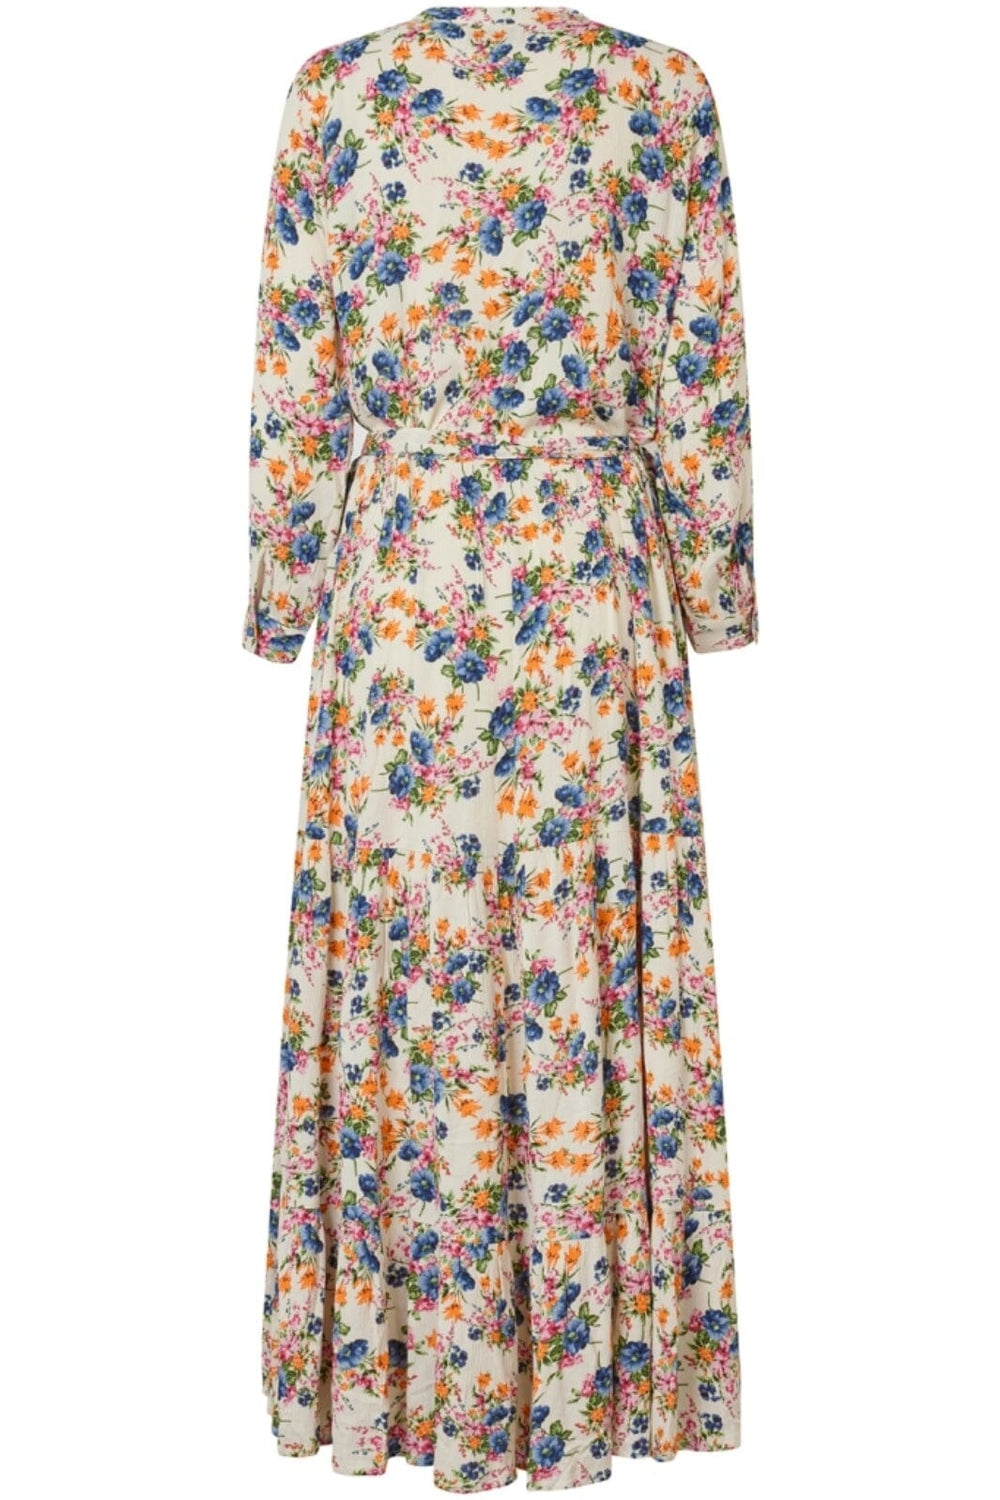 Lollys Laundry - NeeLL Dress 3/4 - 74 Flower Print Kjoler 